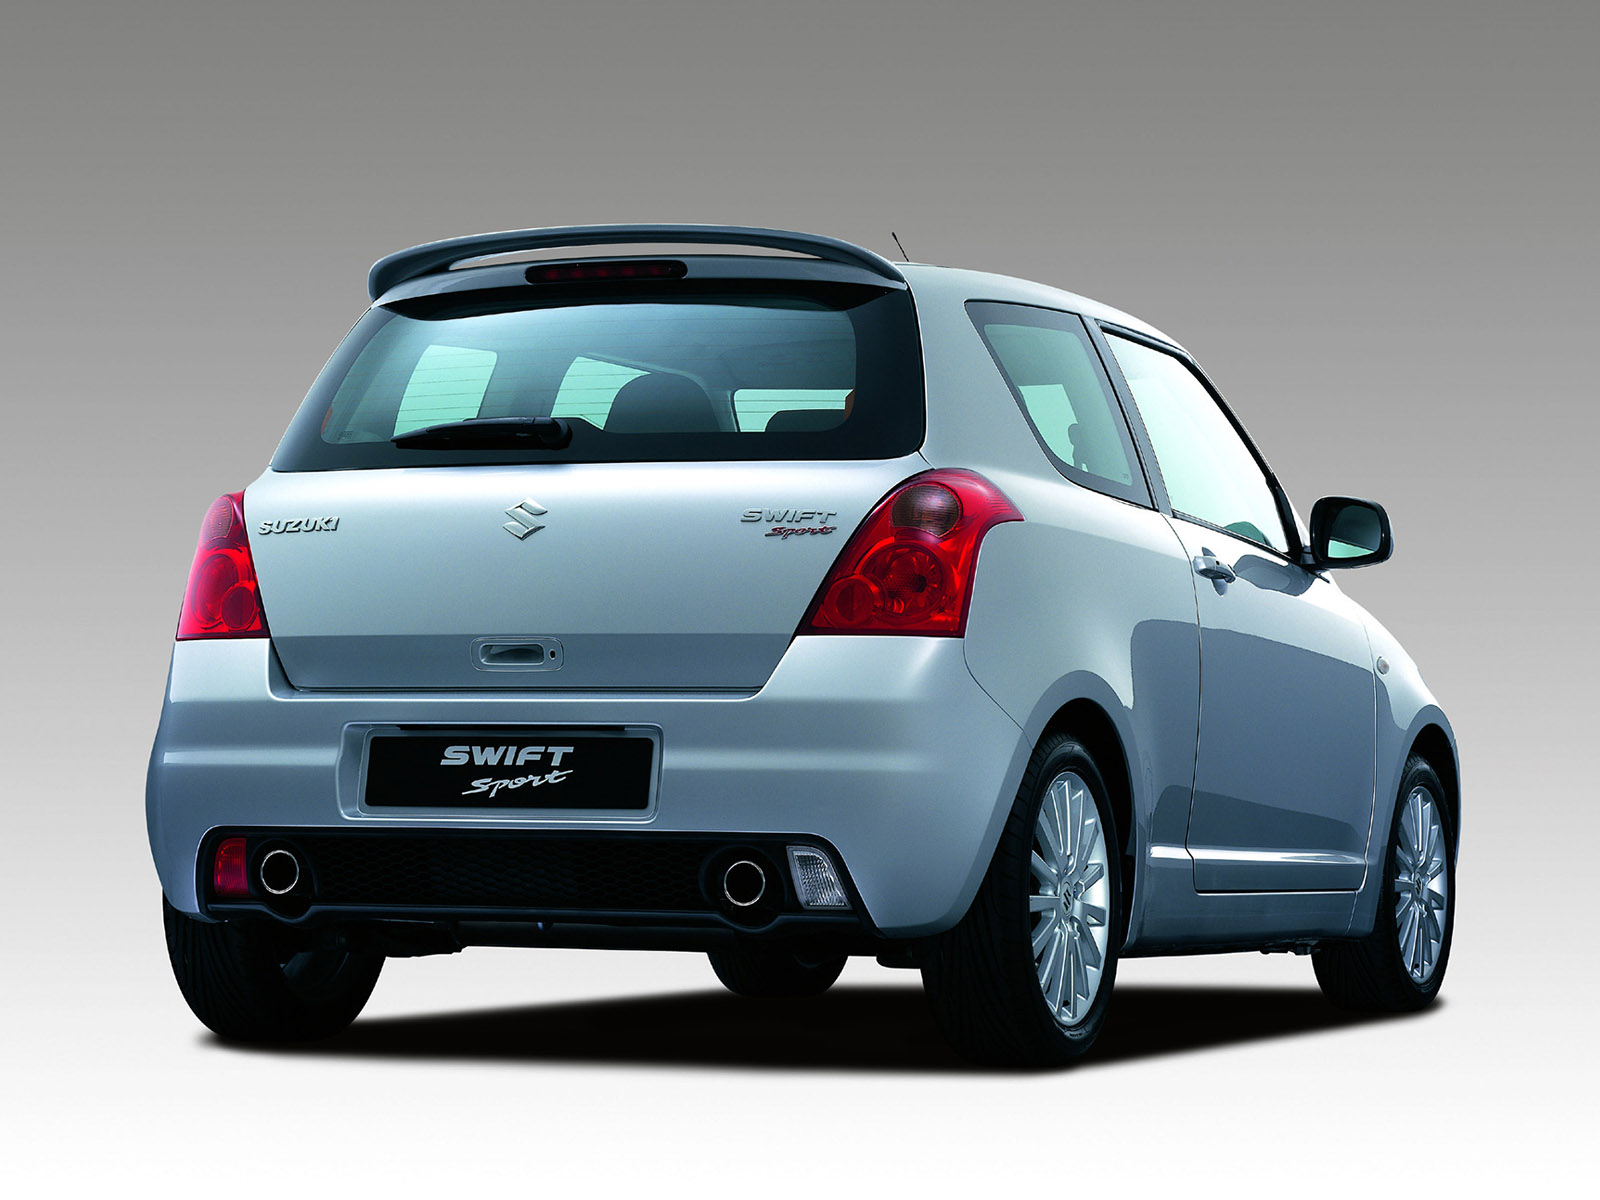 Car in pictures car photo gallery » Suzuki Swift Sport